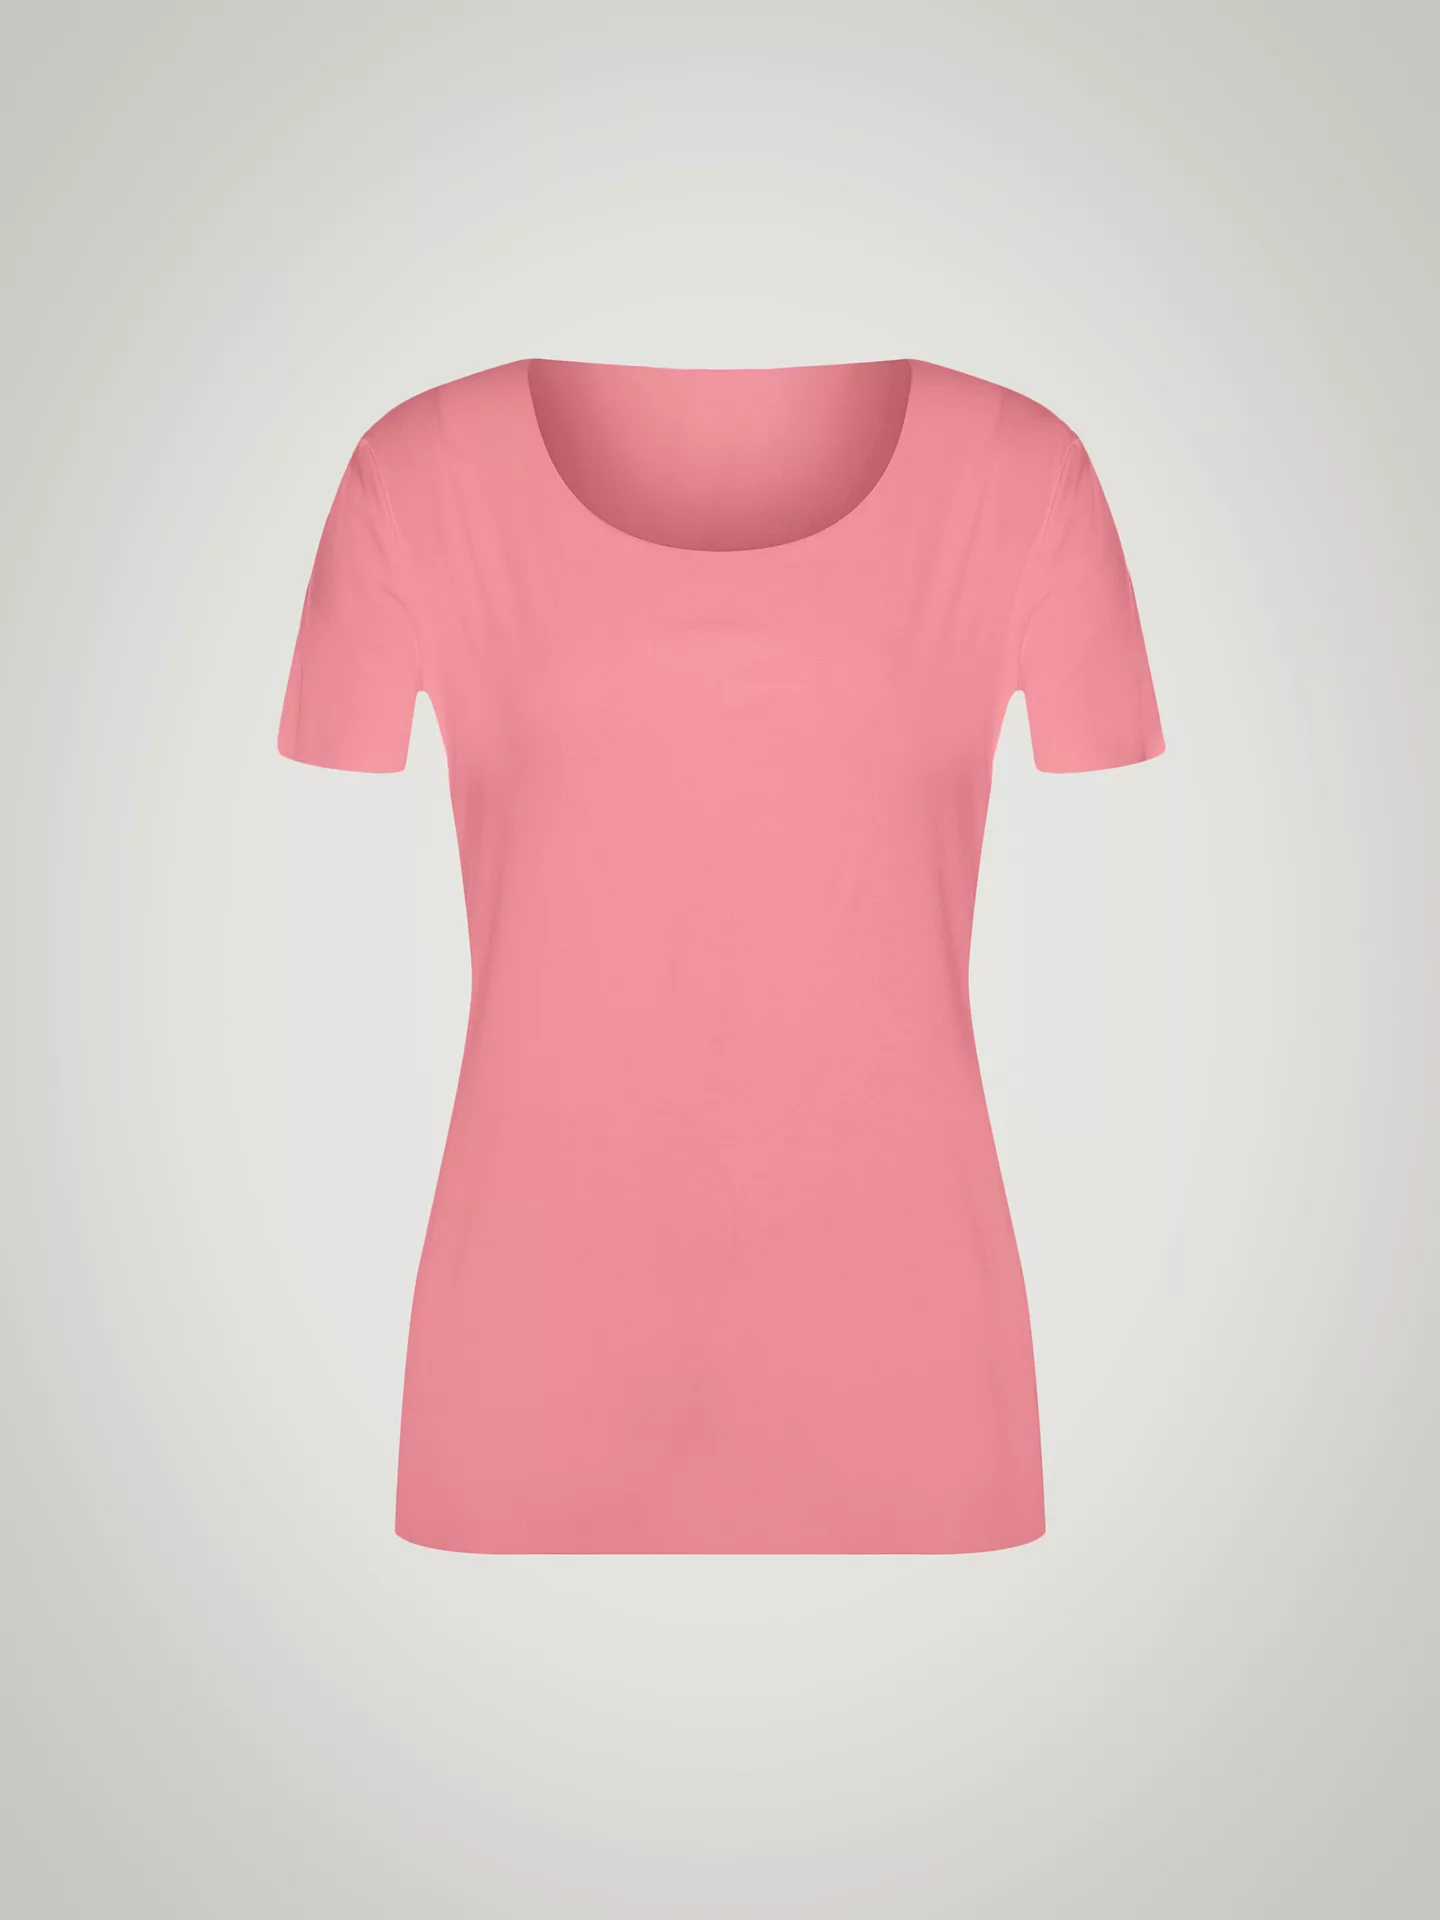 Wolford - Aurora Pure Shirt, Frau, brandied apricot, Größe: S günstig online kaufen